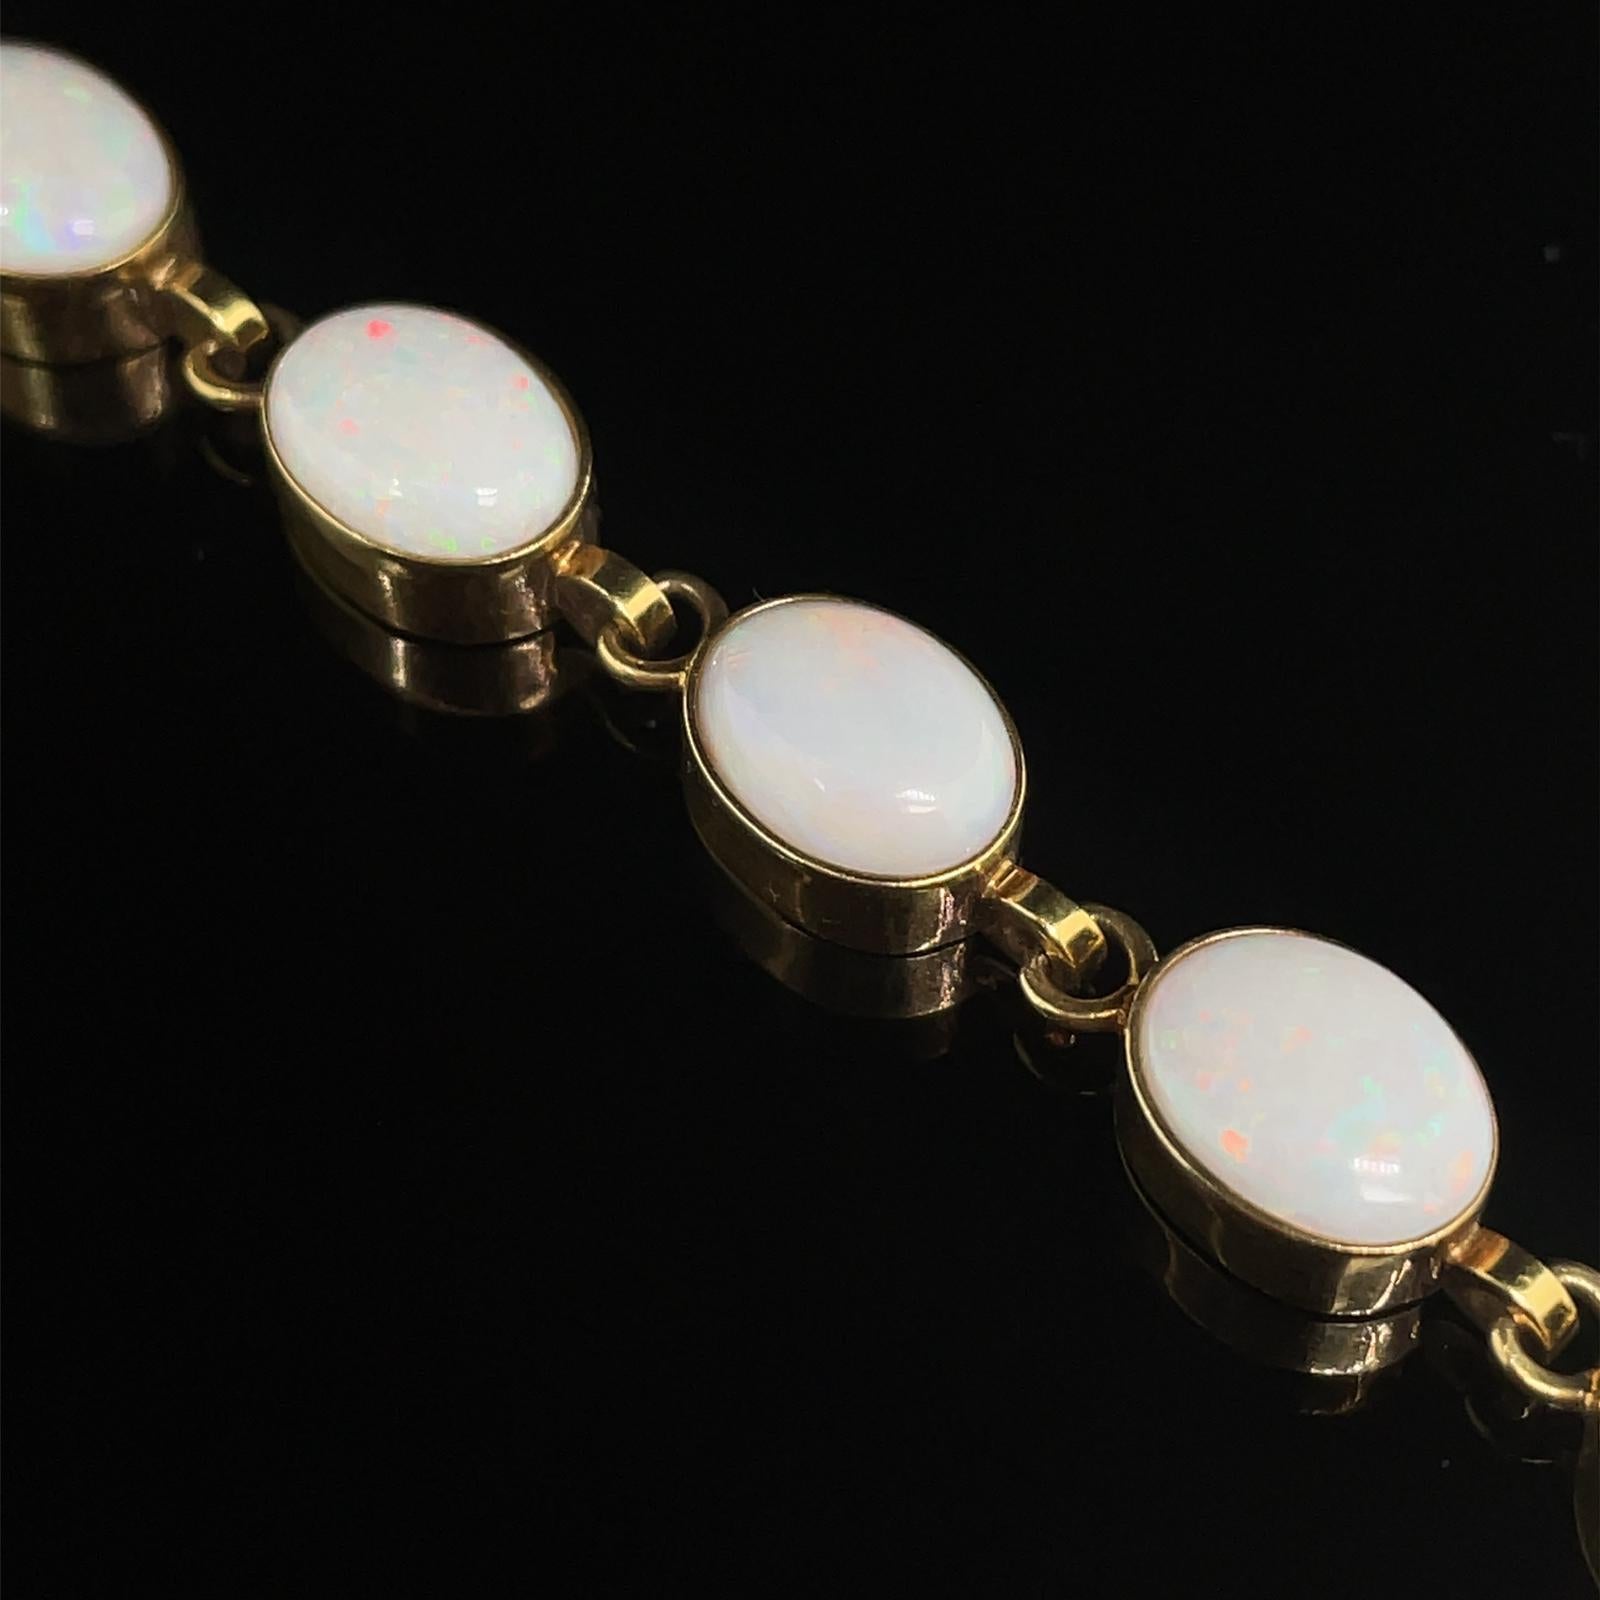 Ein Vintage-Opal-Armband aus 9 Karat Gelbgold, um 1990.

Dieses hübsche Armband besteht aus ovalen weißen Cabochons in eleganter Rubover-Fassung, die mit schlichten, polierten Kabelgliedern verbunden sind und mit einem Kastenverschluss und einer